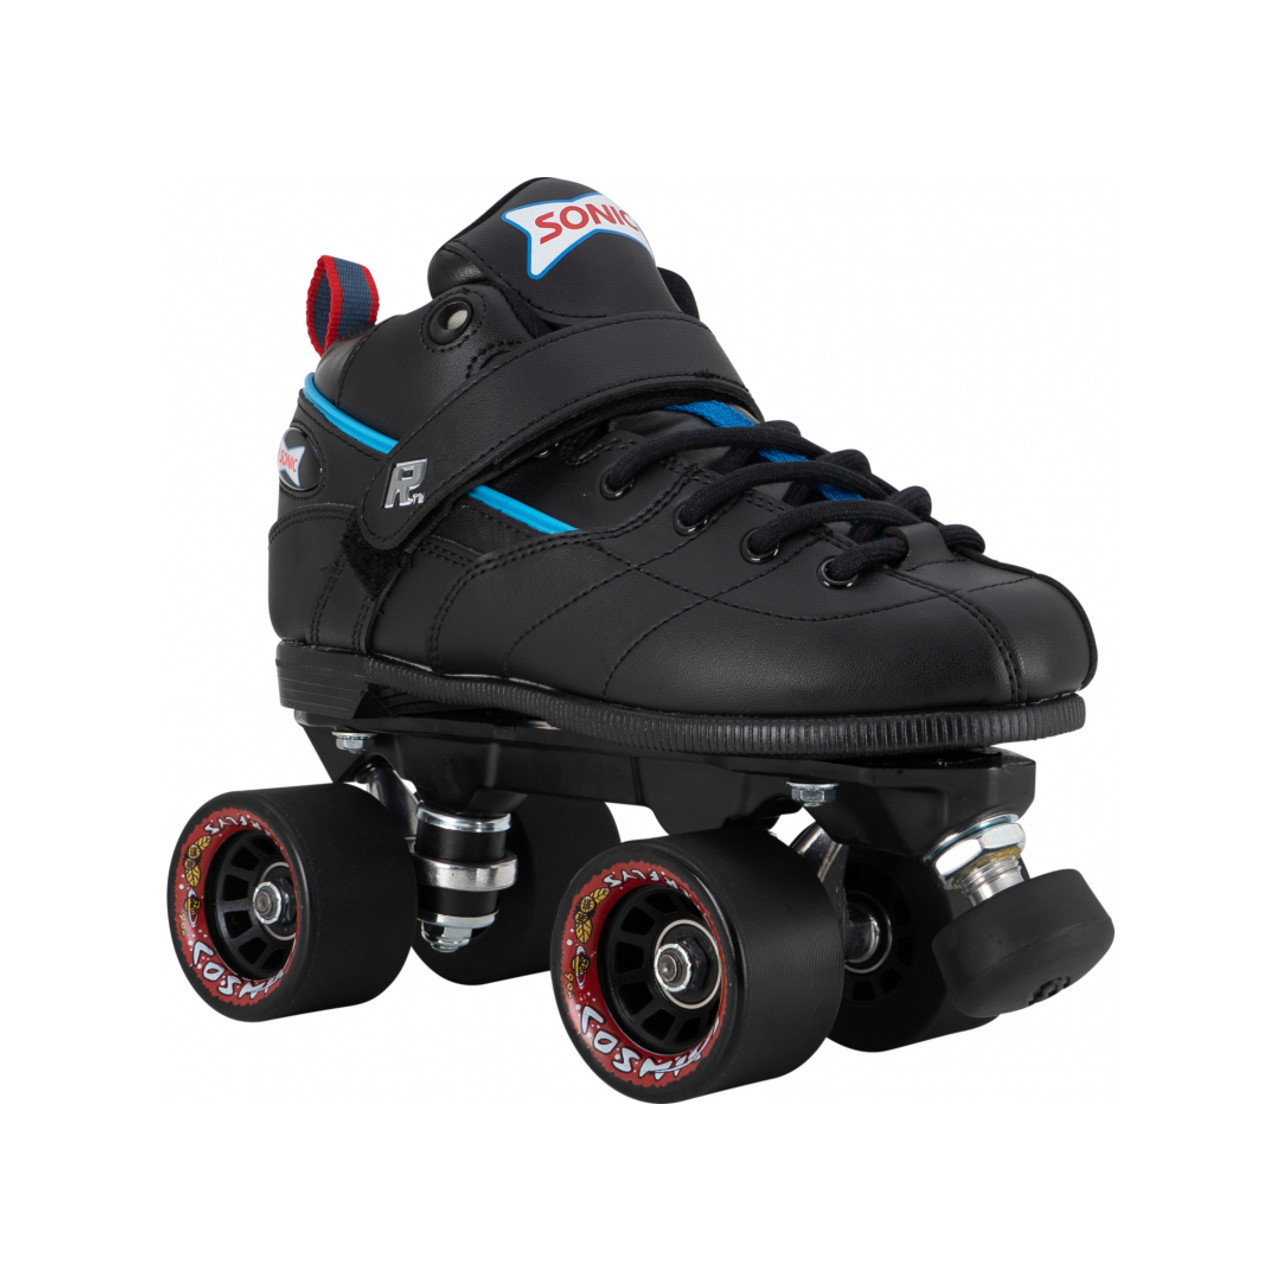 Pom Poms for Roller Skates or Shoes Shoe / Bag / Roller Skate Accessories -   Israel